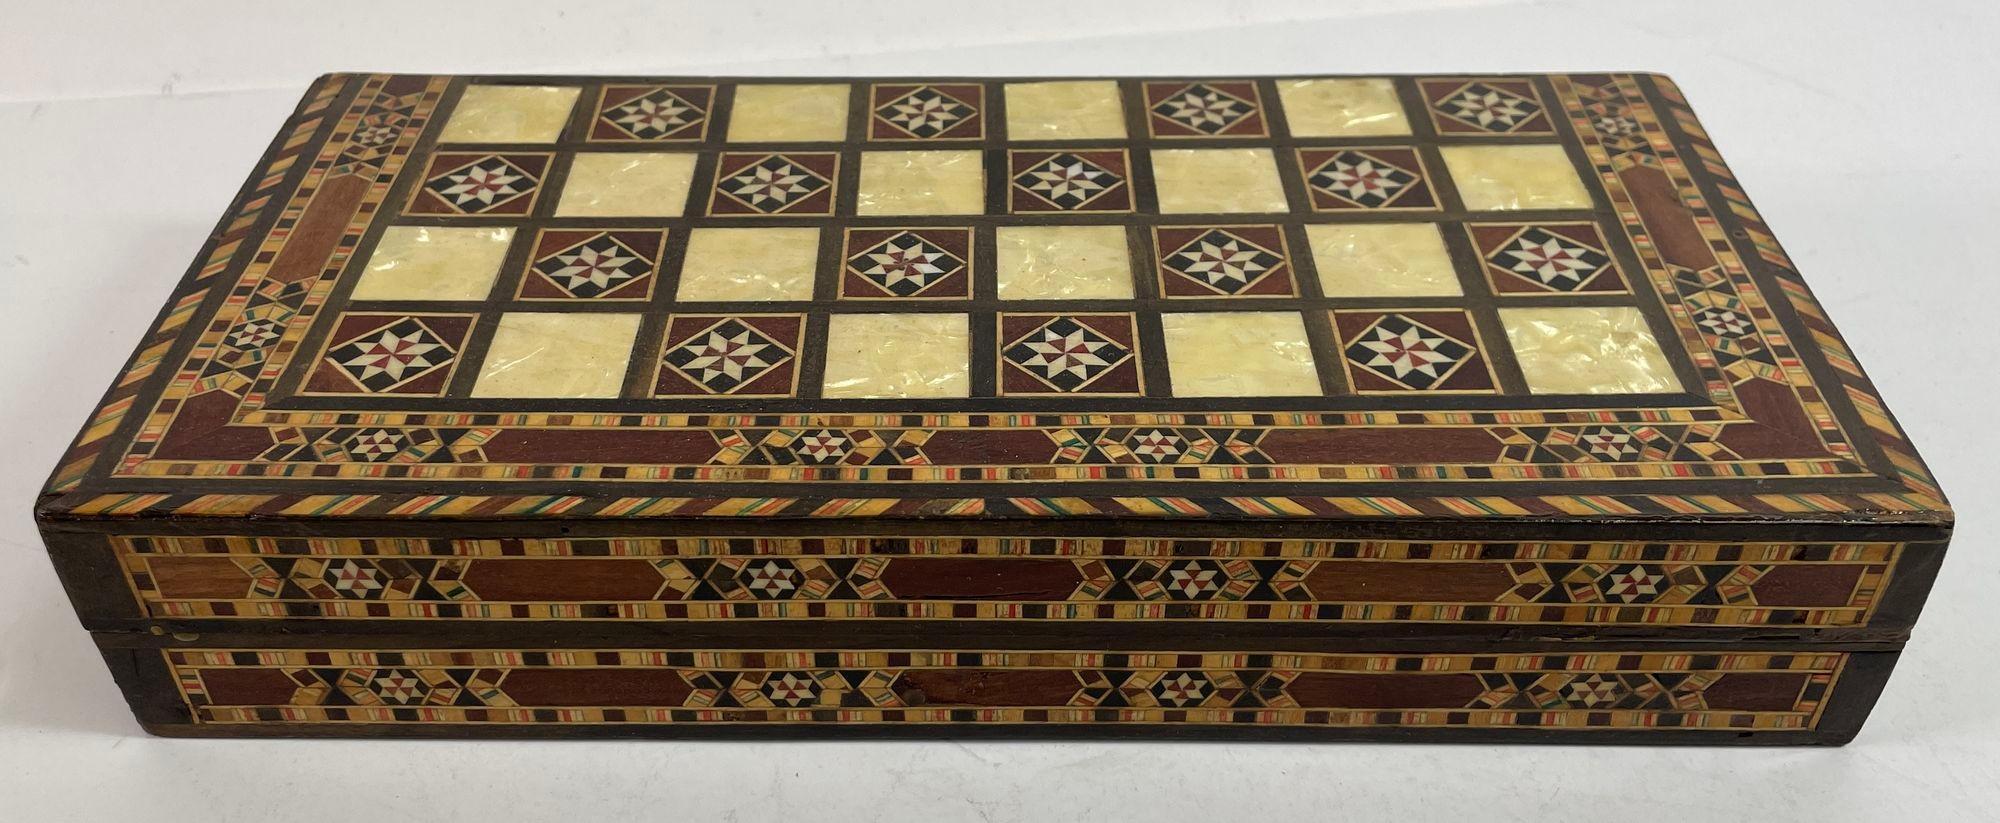 Coffret de marqueterie en bois incrusté de mosaïques du Moyen-Orient Jeu de Backgammon et d'échecs.
Boîte de marqueterie en bois incrusté de micro-mosaïques du Moyen-Orient.
Grande boîte de jeu de backgammon et d'échecs vintage de style mauresque